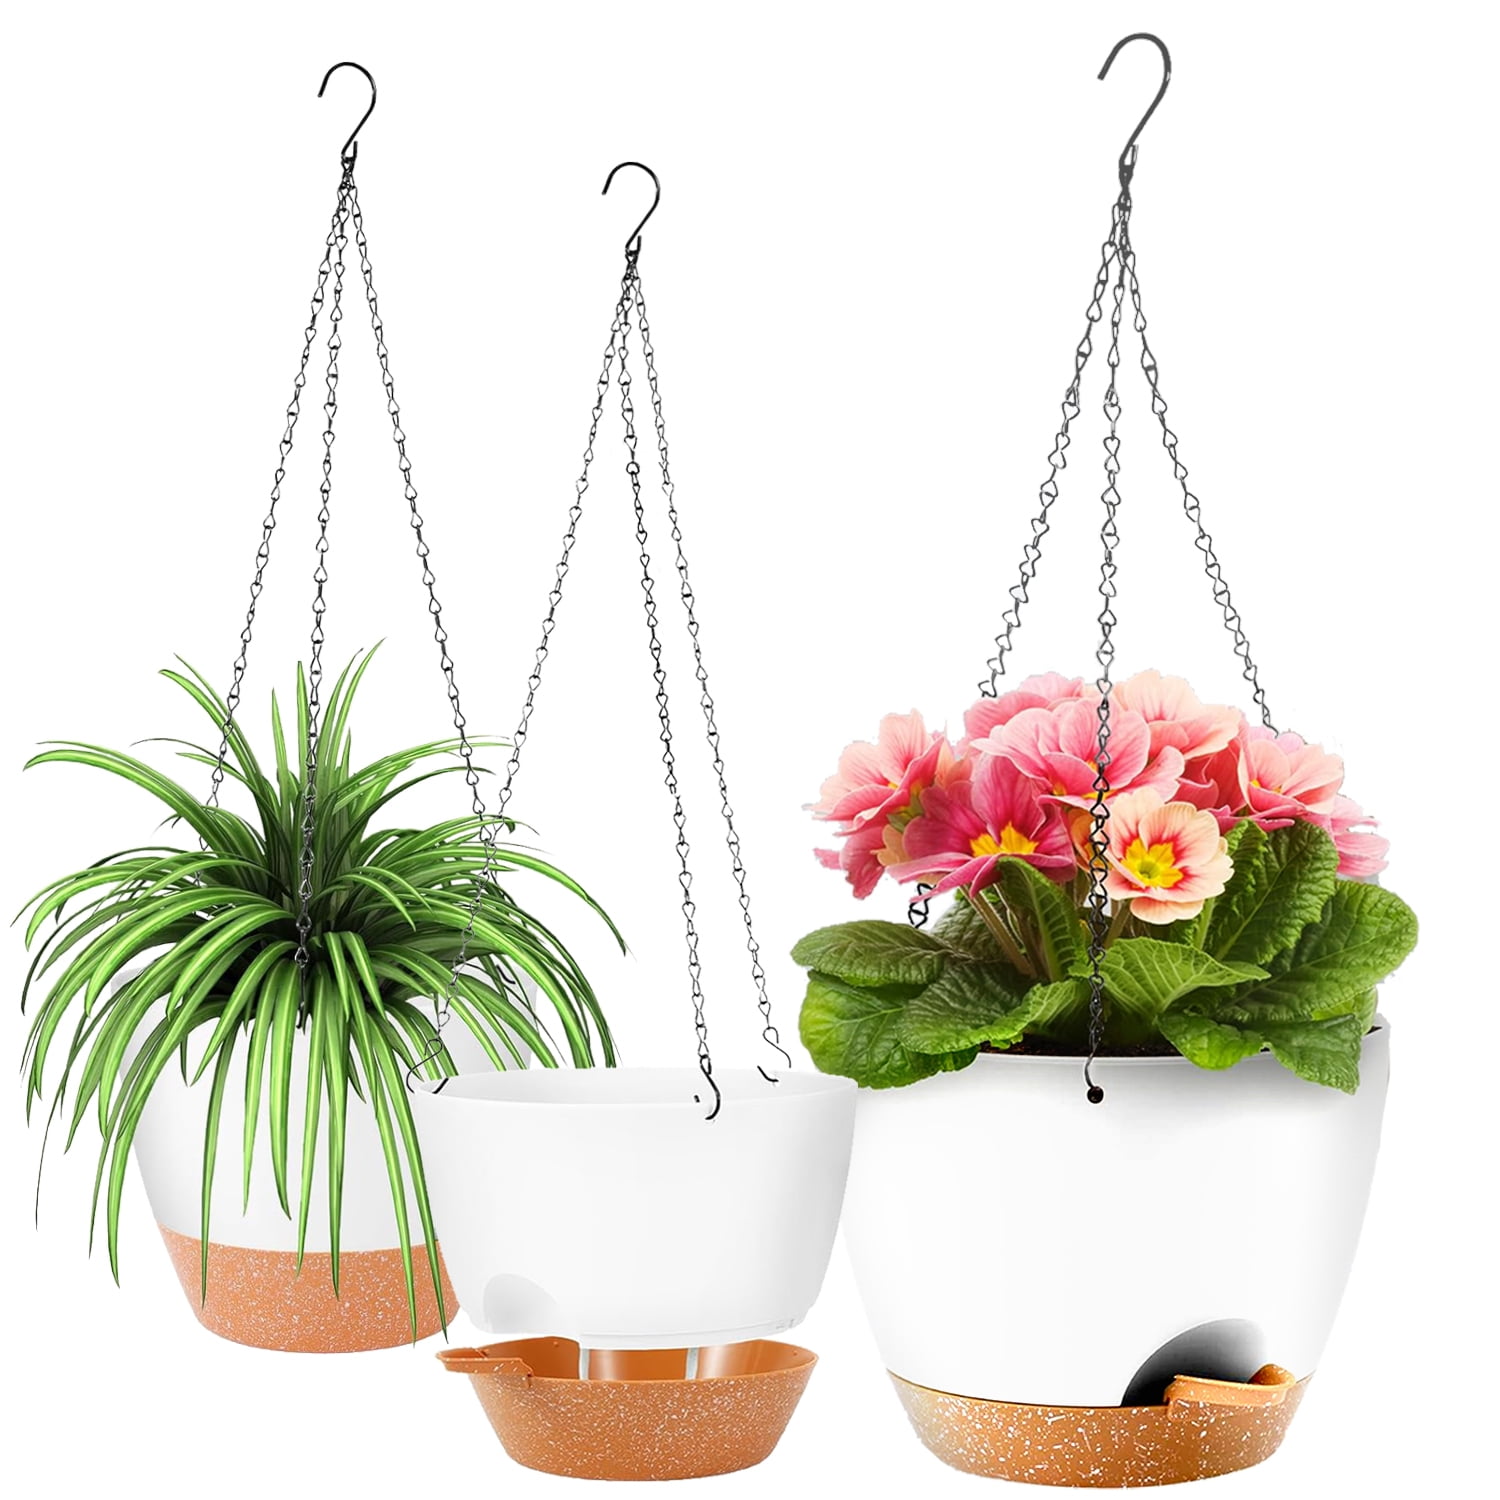 Festive flower picks for your planter — Wearable Planter